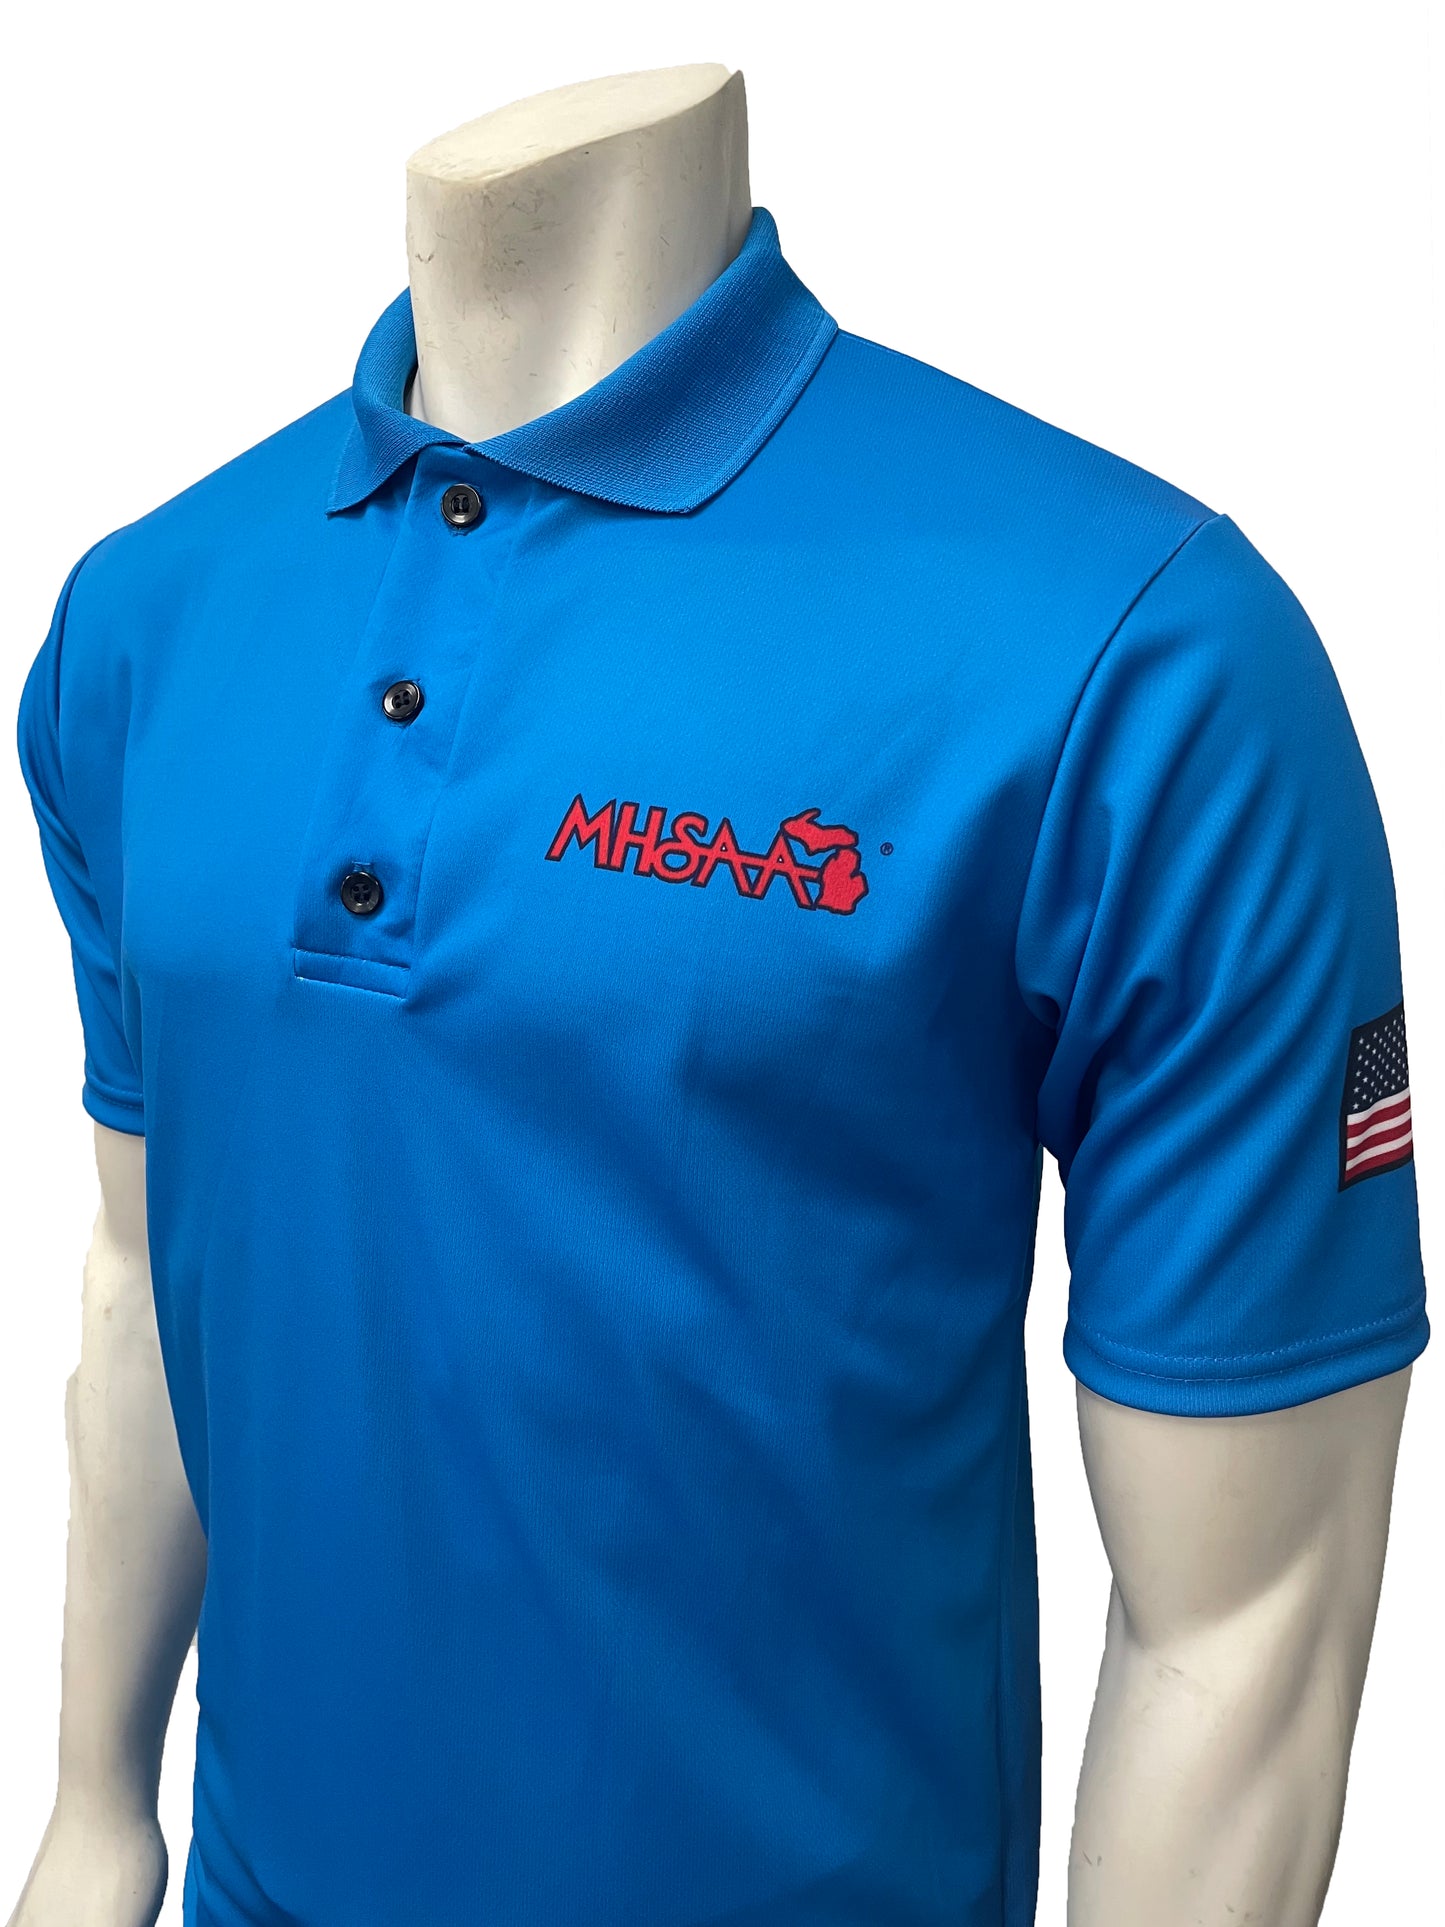 "NEW" USA437MI- Smitty USA - Bright Blue - Dye Sub Michigan Volleyball/Swimming Shirt